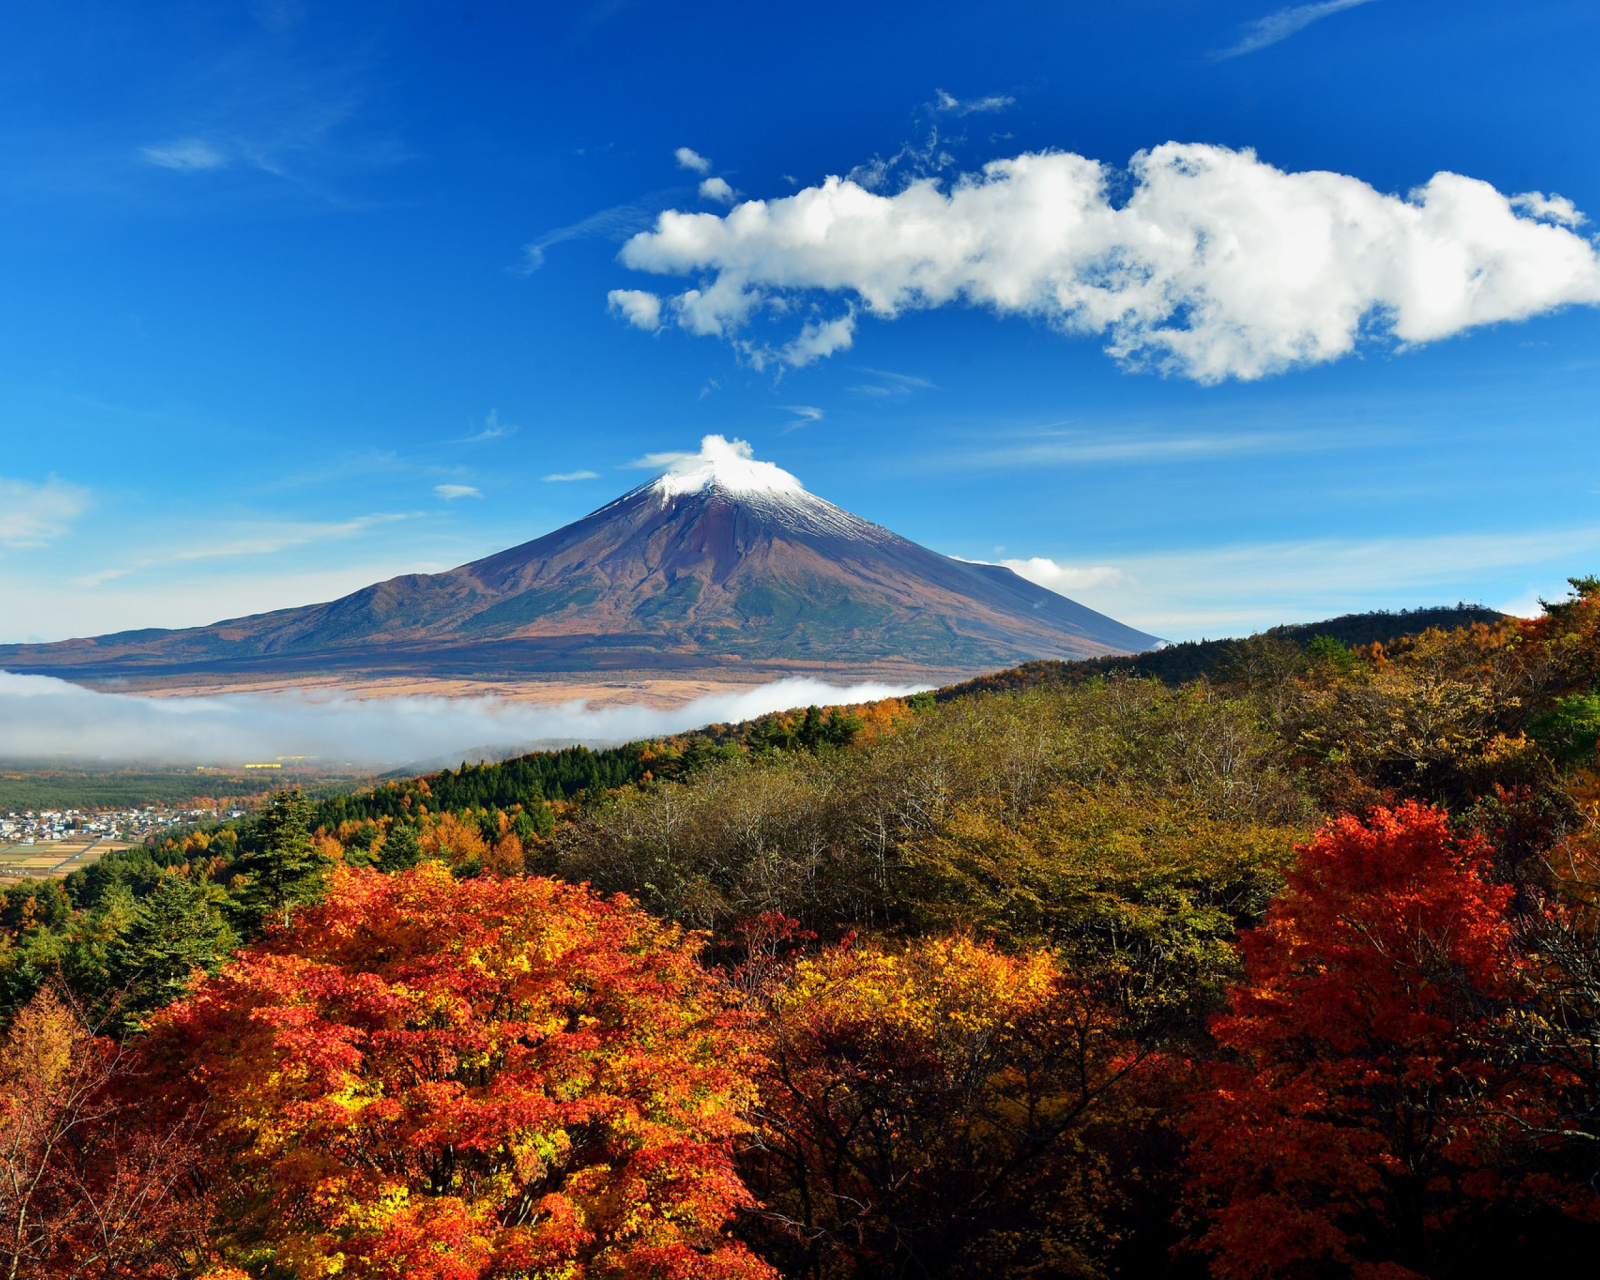 Mount Fuji 3776 Meters wallpaper 1600x1280